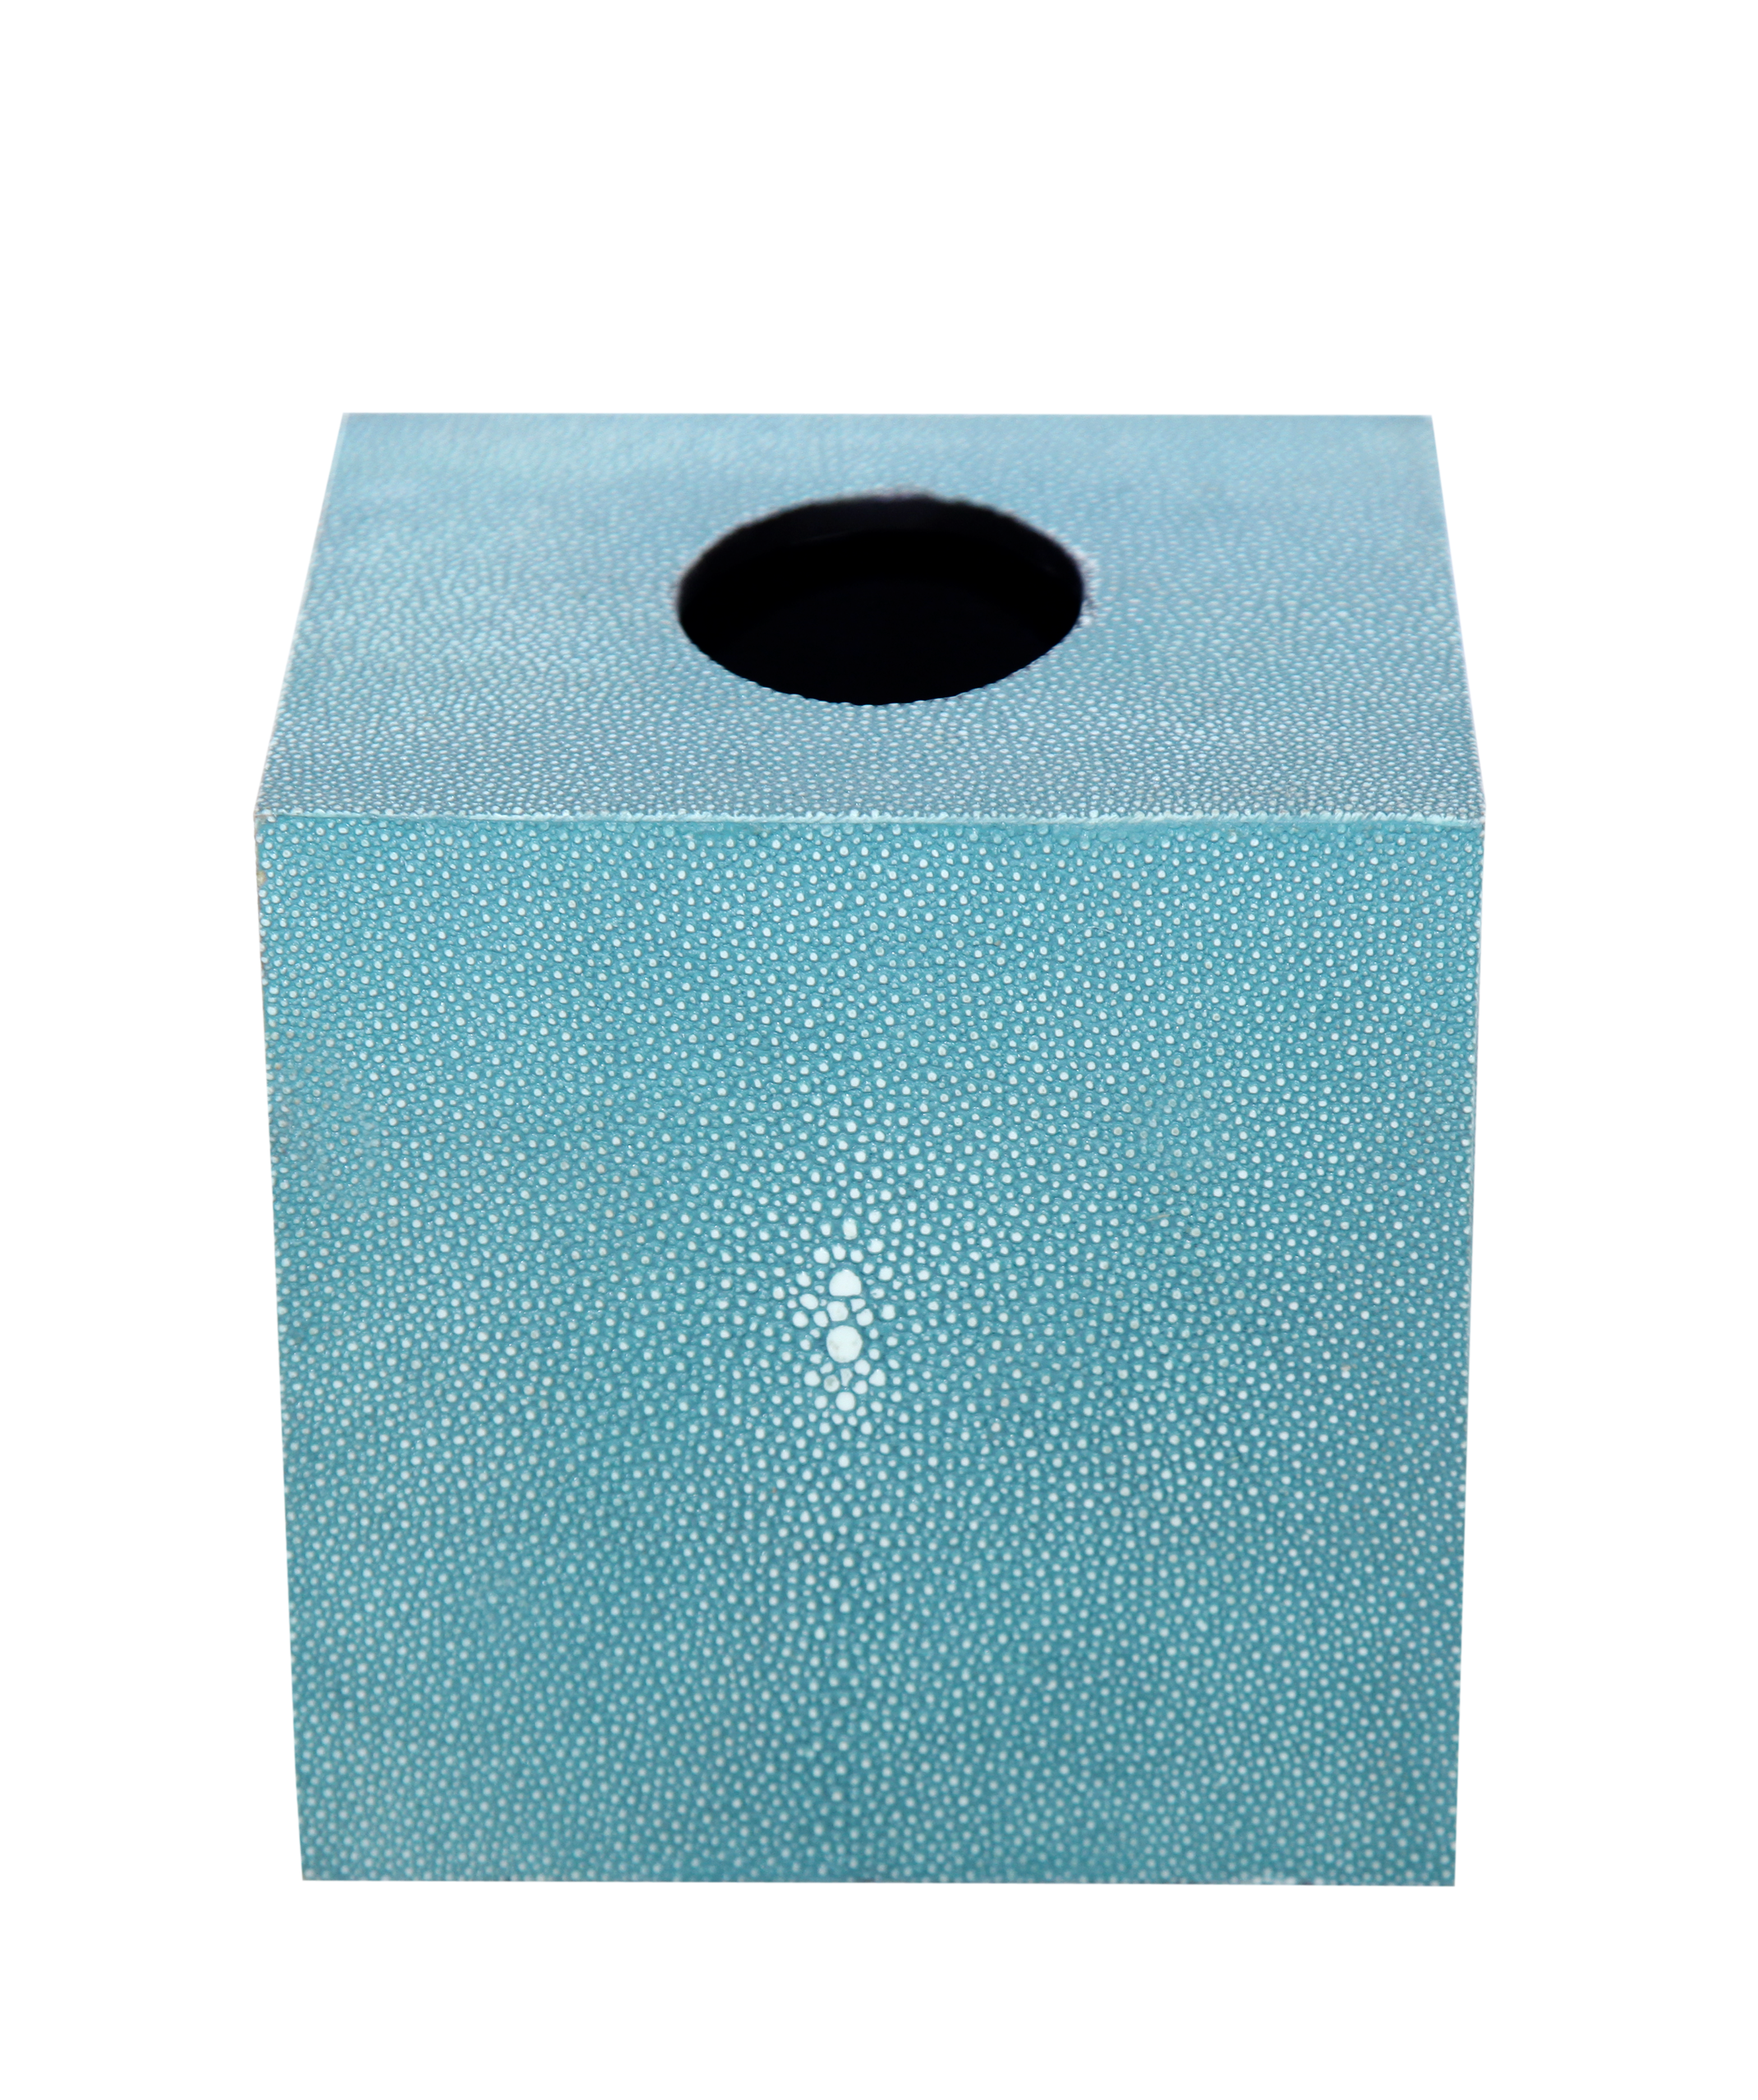 Hộp khăn giấy da cá đuối hình vuông màu Turquoise